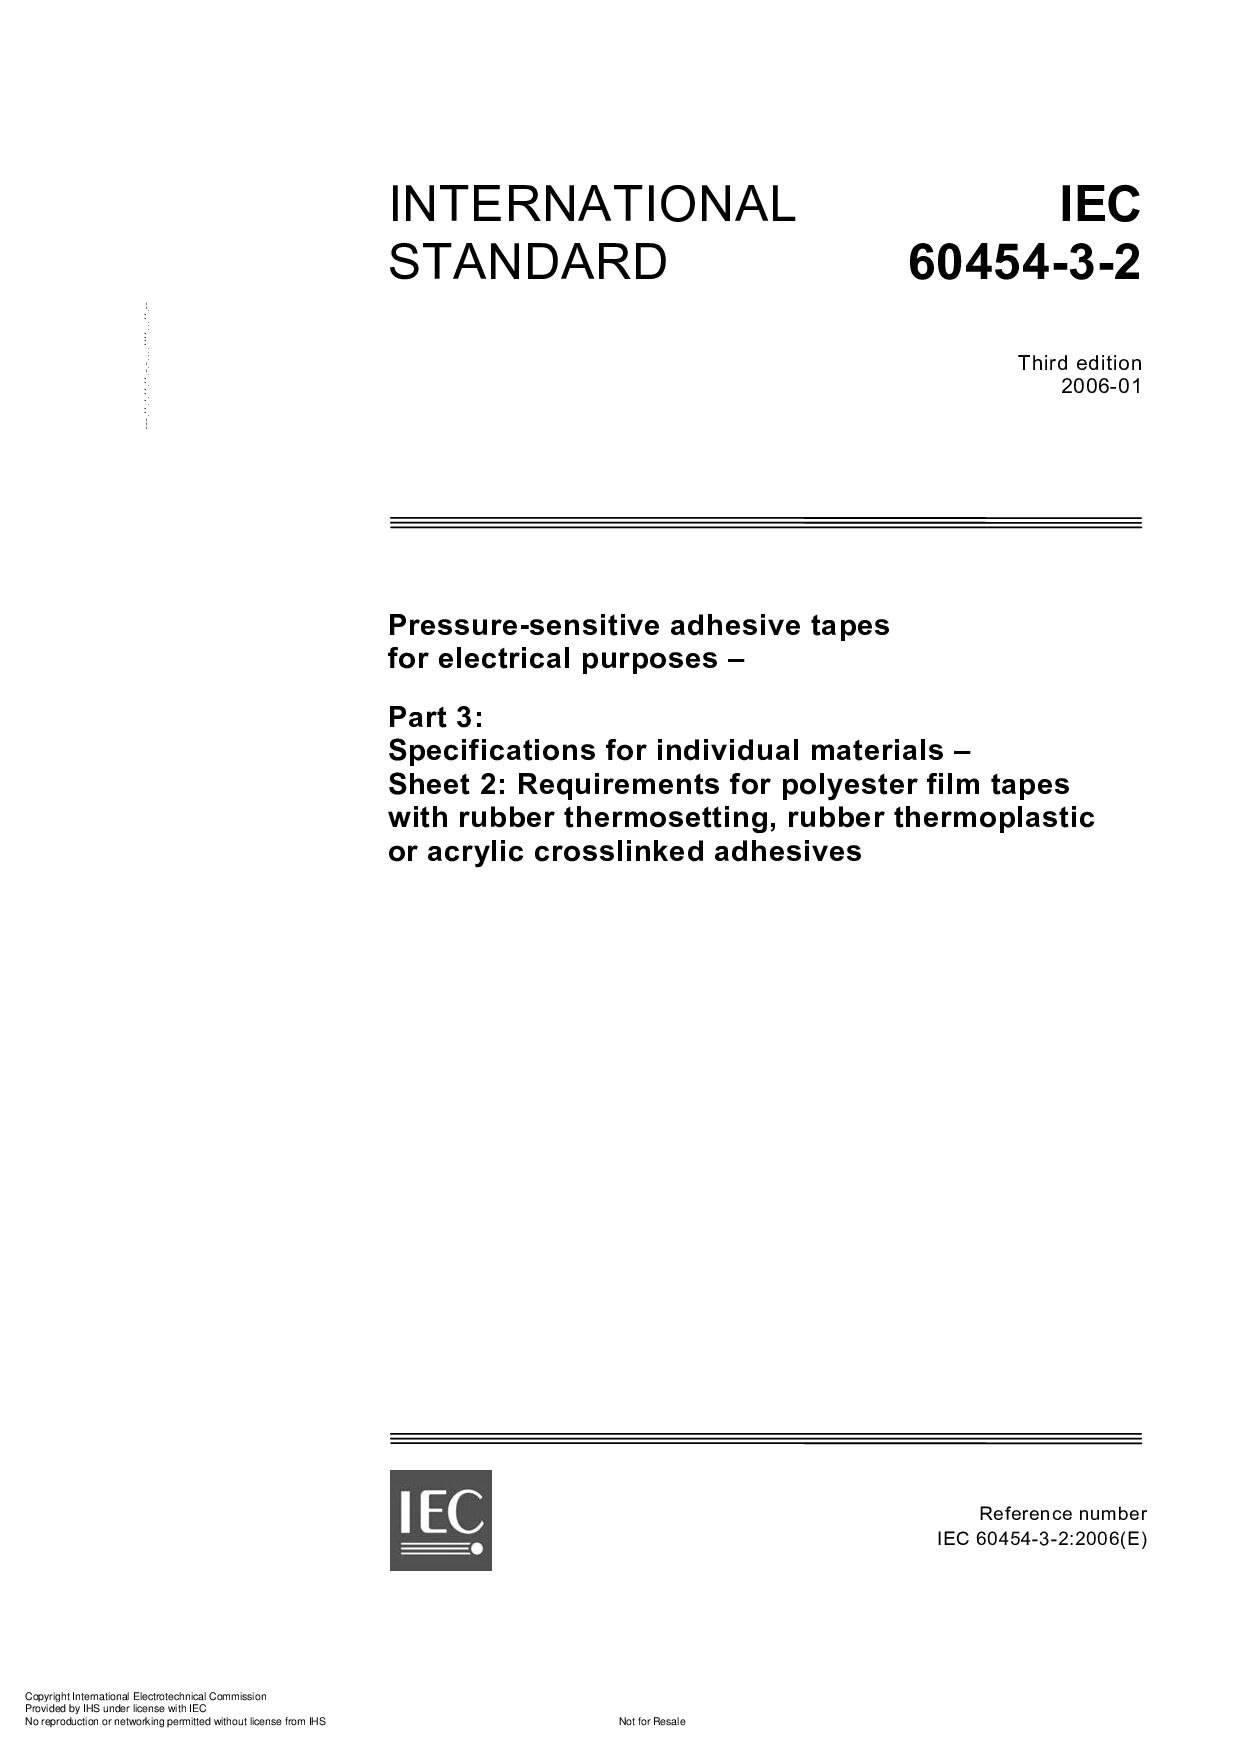 IEC 60454-3-2:2006